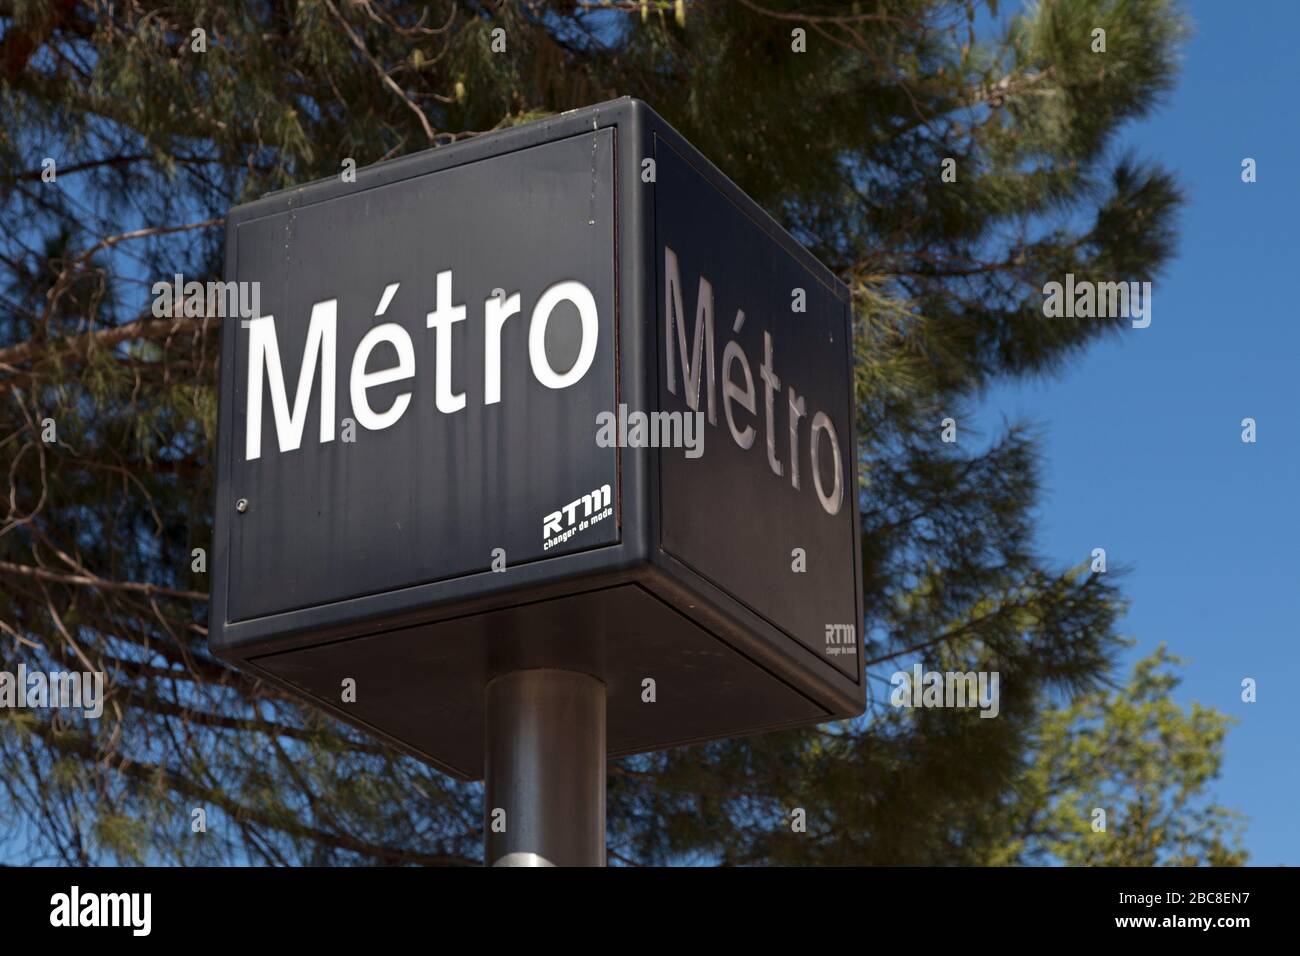 Marsiglia, Francia - Marzo 23 2019: Cartello della metropolitana di Marsiglia (francese: Metropolitana di Marsiglia) fuori da una stazione della metropolitana. Foto Stock